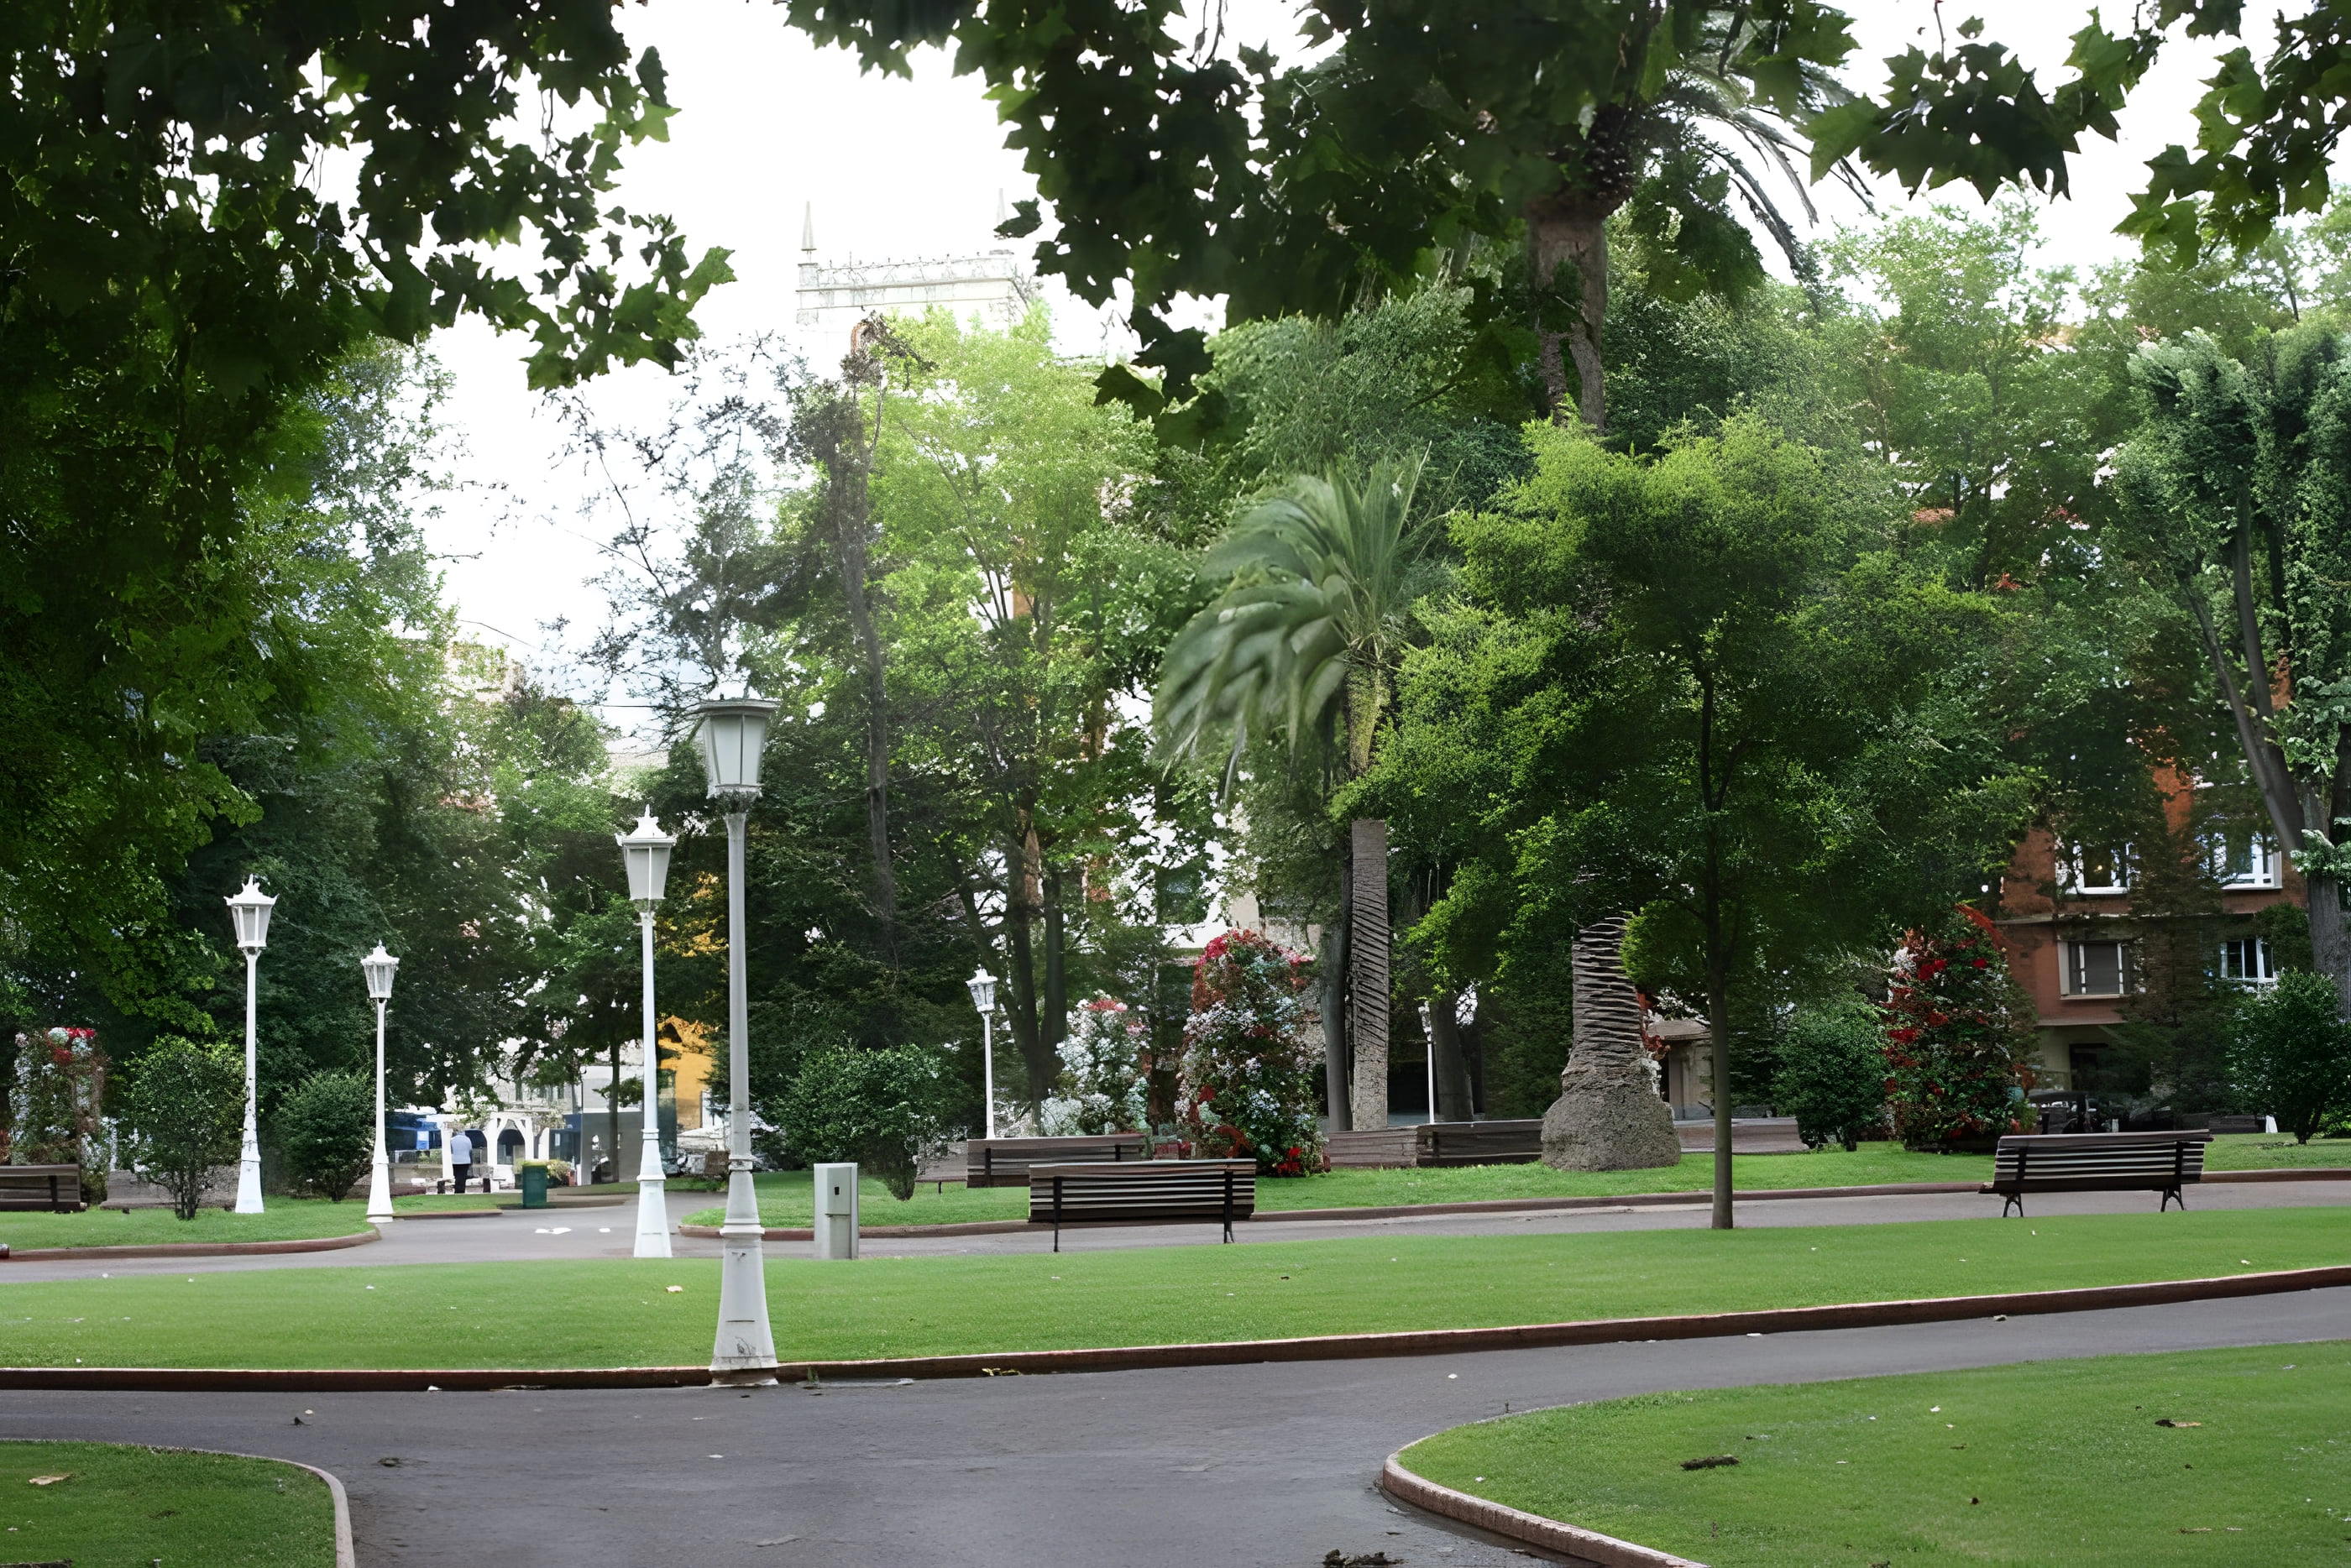 Doña Casilda Park